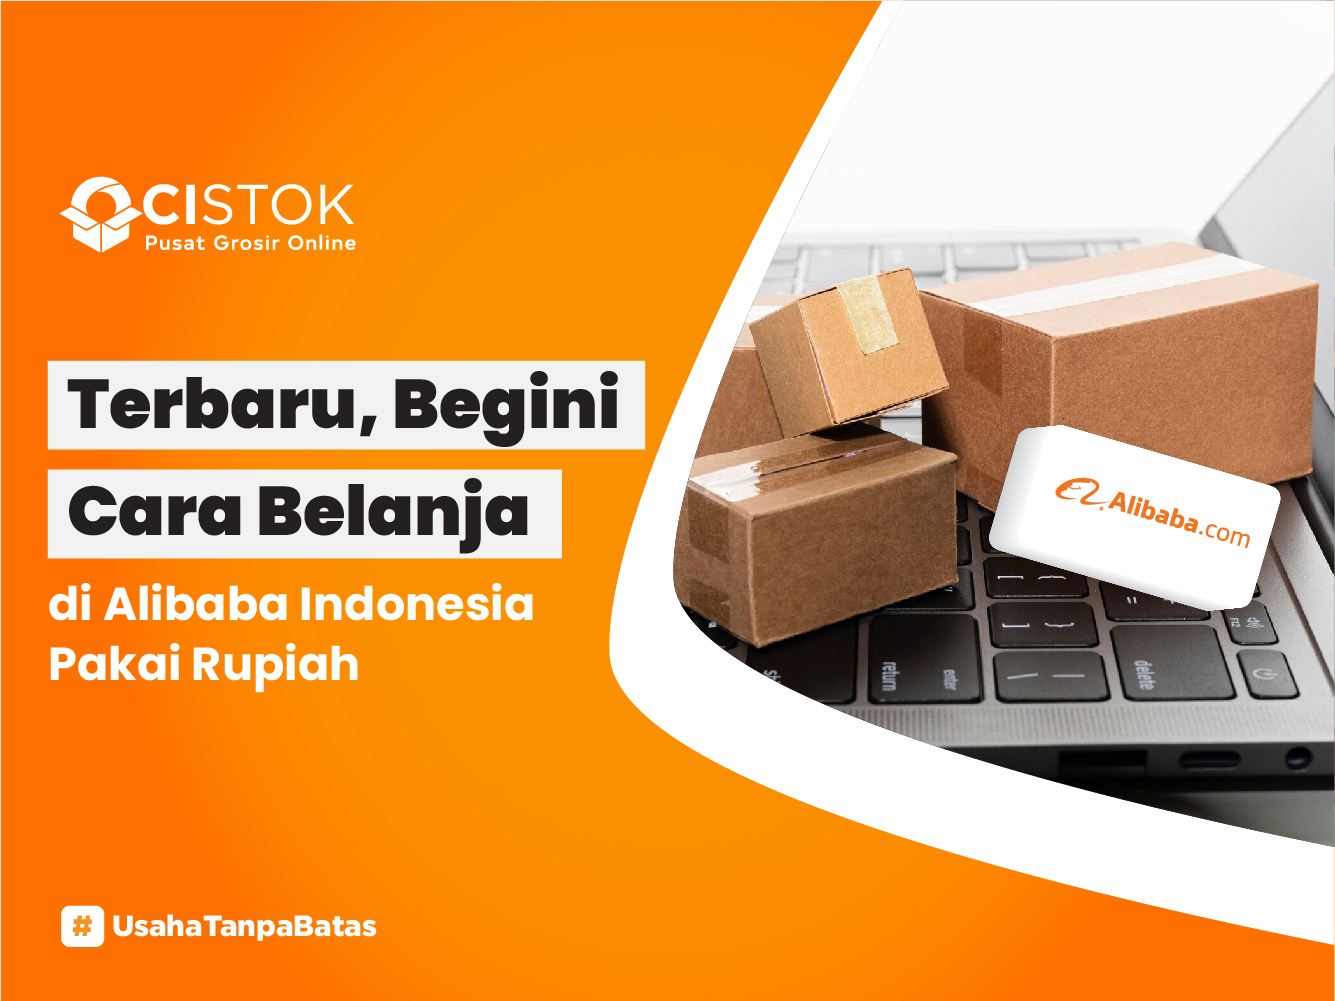 https://s3x.ocistok.com/ocistok/content/foto/Terbaru,-Begini-Cara-Belanja-di-Alibaba-Indonesia-Pakai-Rupiah.jpg